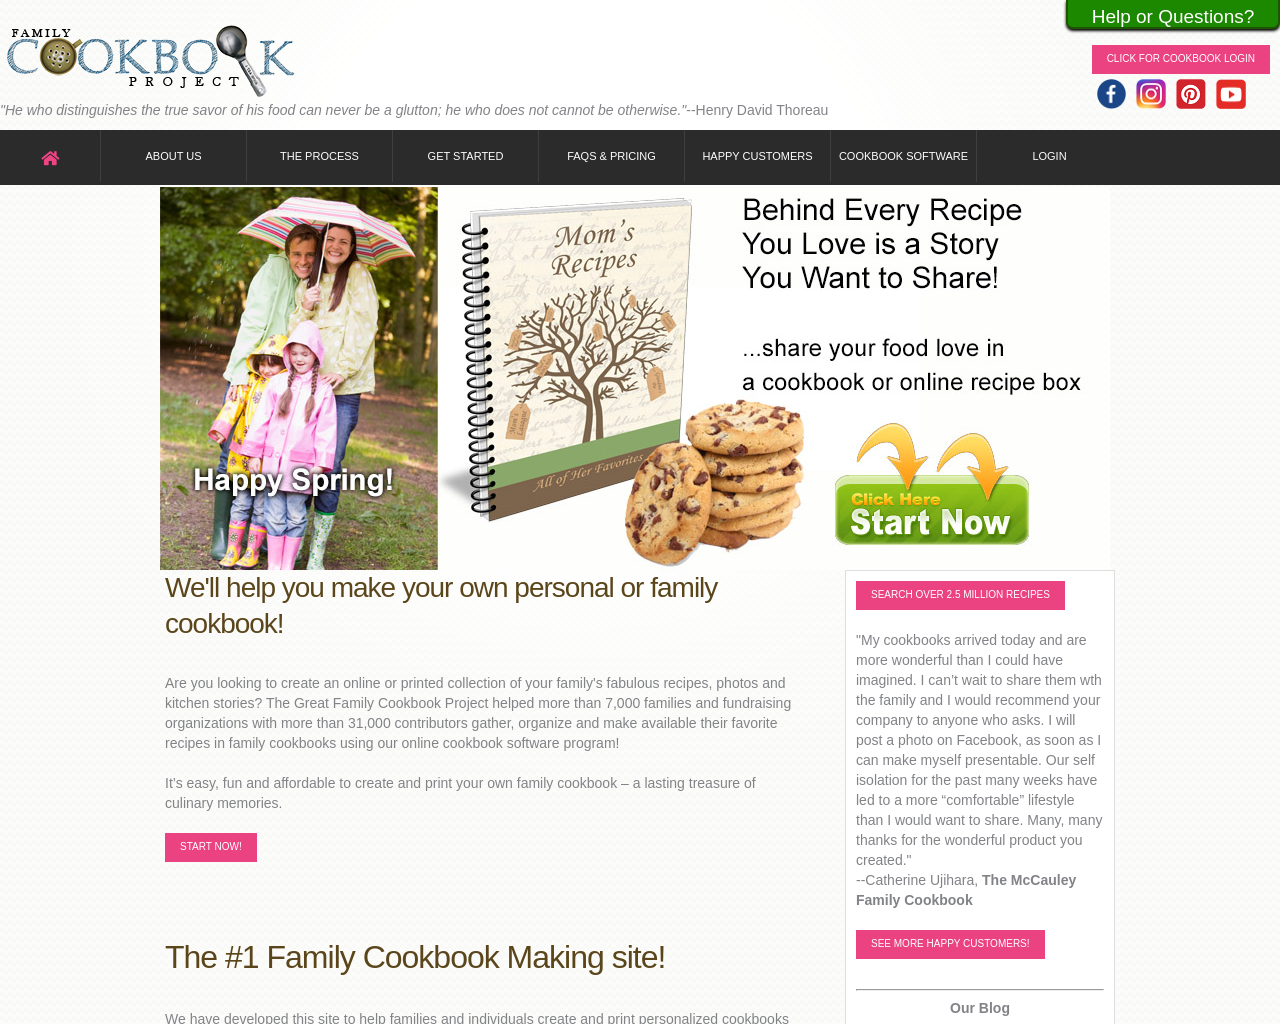 familycookbookproject.com